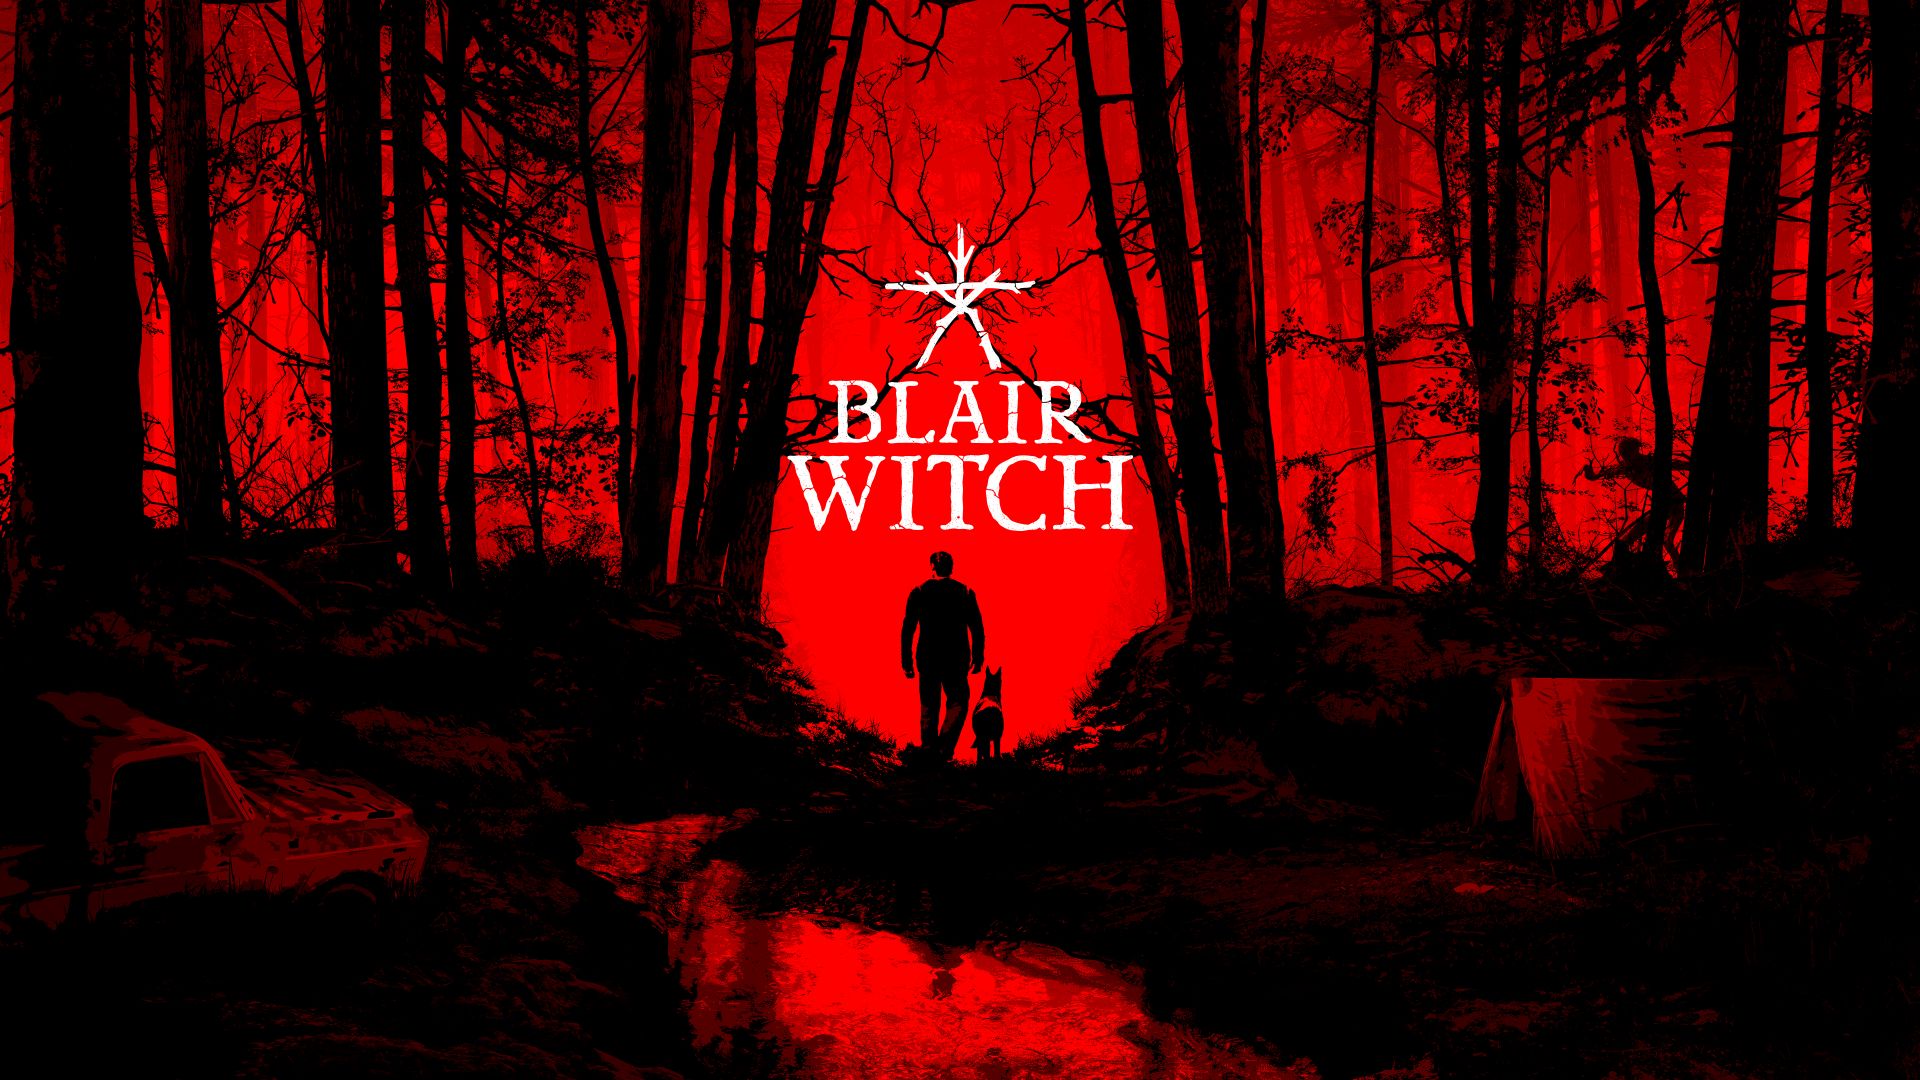 Blair Witch, E3 2019, artwork, 4K (horizontal)